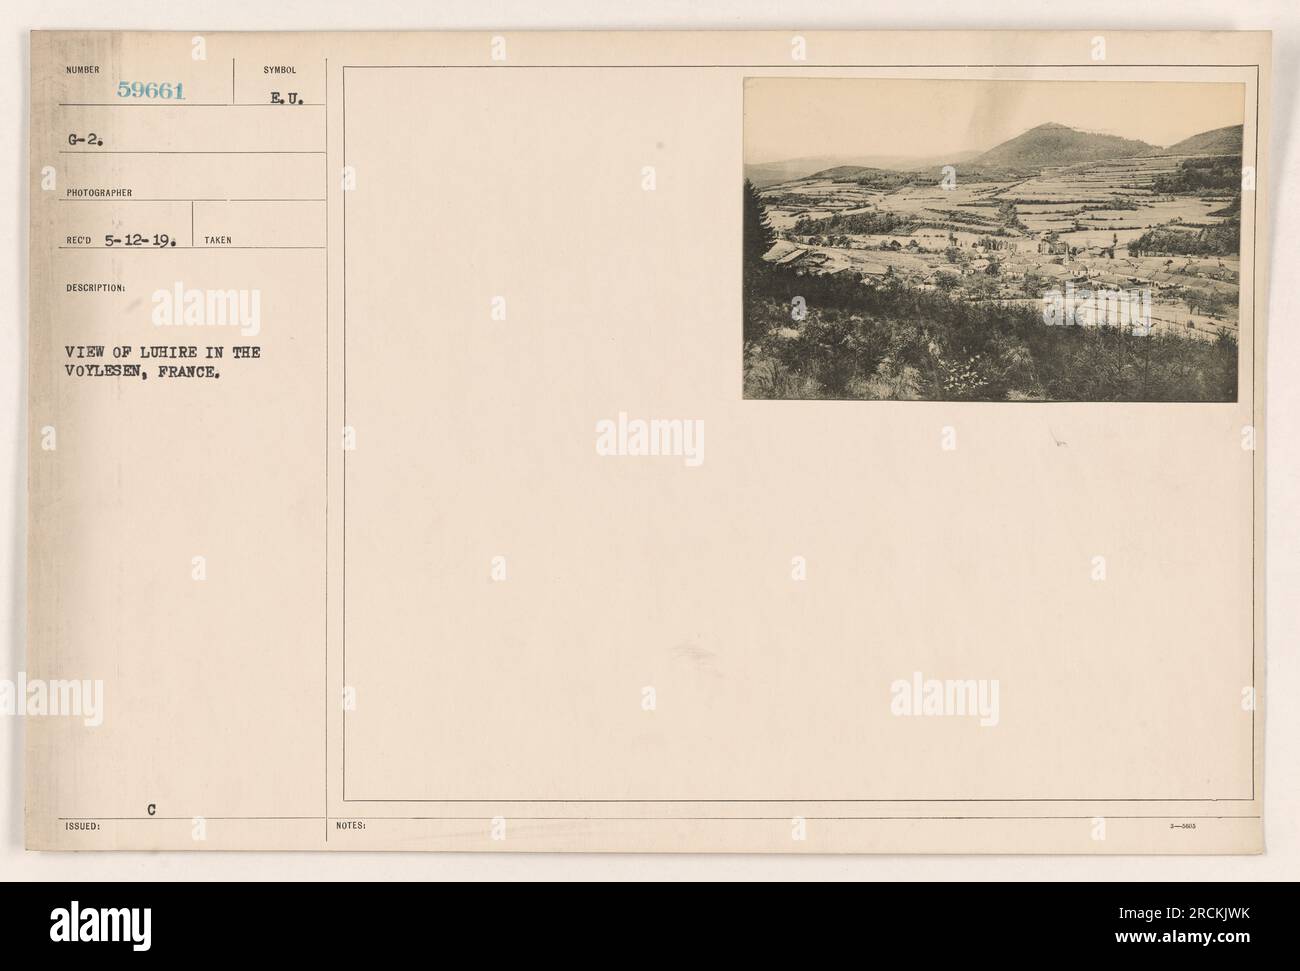 Una vista di Luhire nel Voylesen, Francia durante la prima guerra mondiale. La fotografia, numerata G-2. 59661, fu scattata il 12-5-19 e raffigura la città. È stato emesso con il simbolo E. U. Note 3-400. Foto Stock